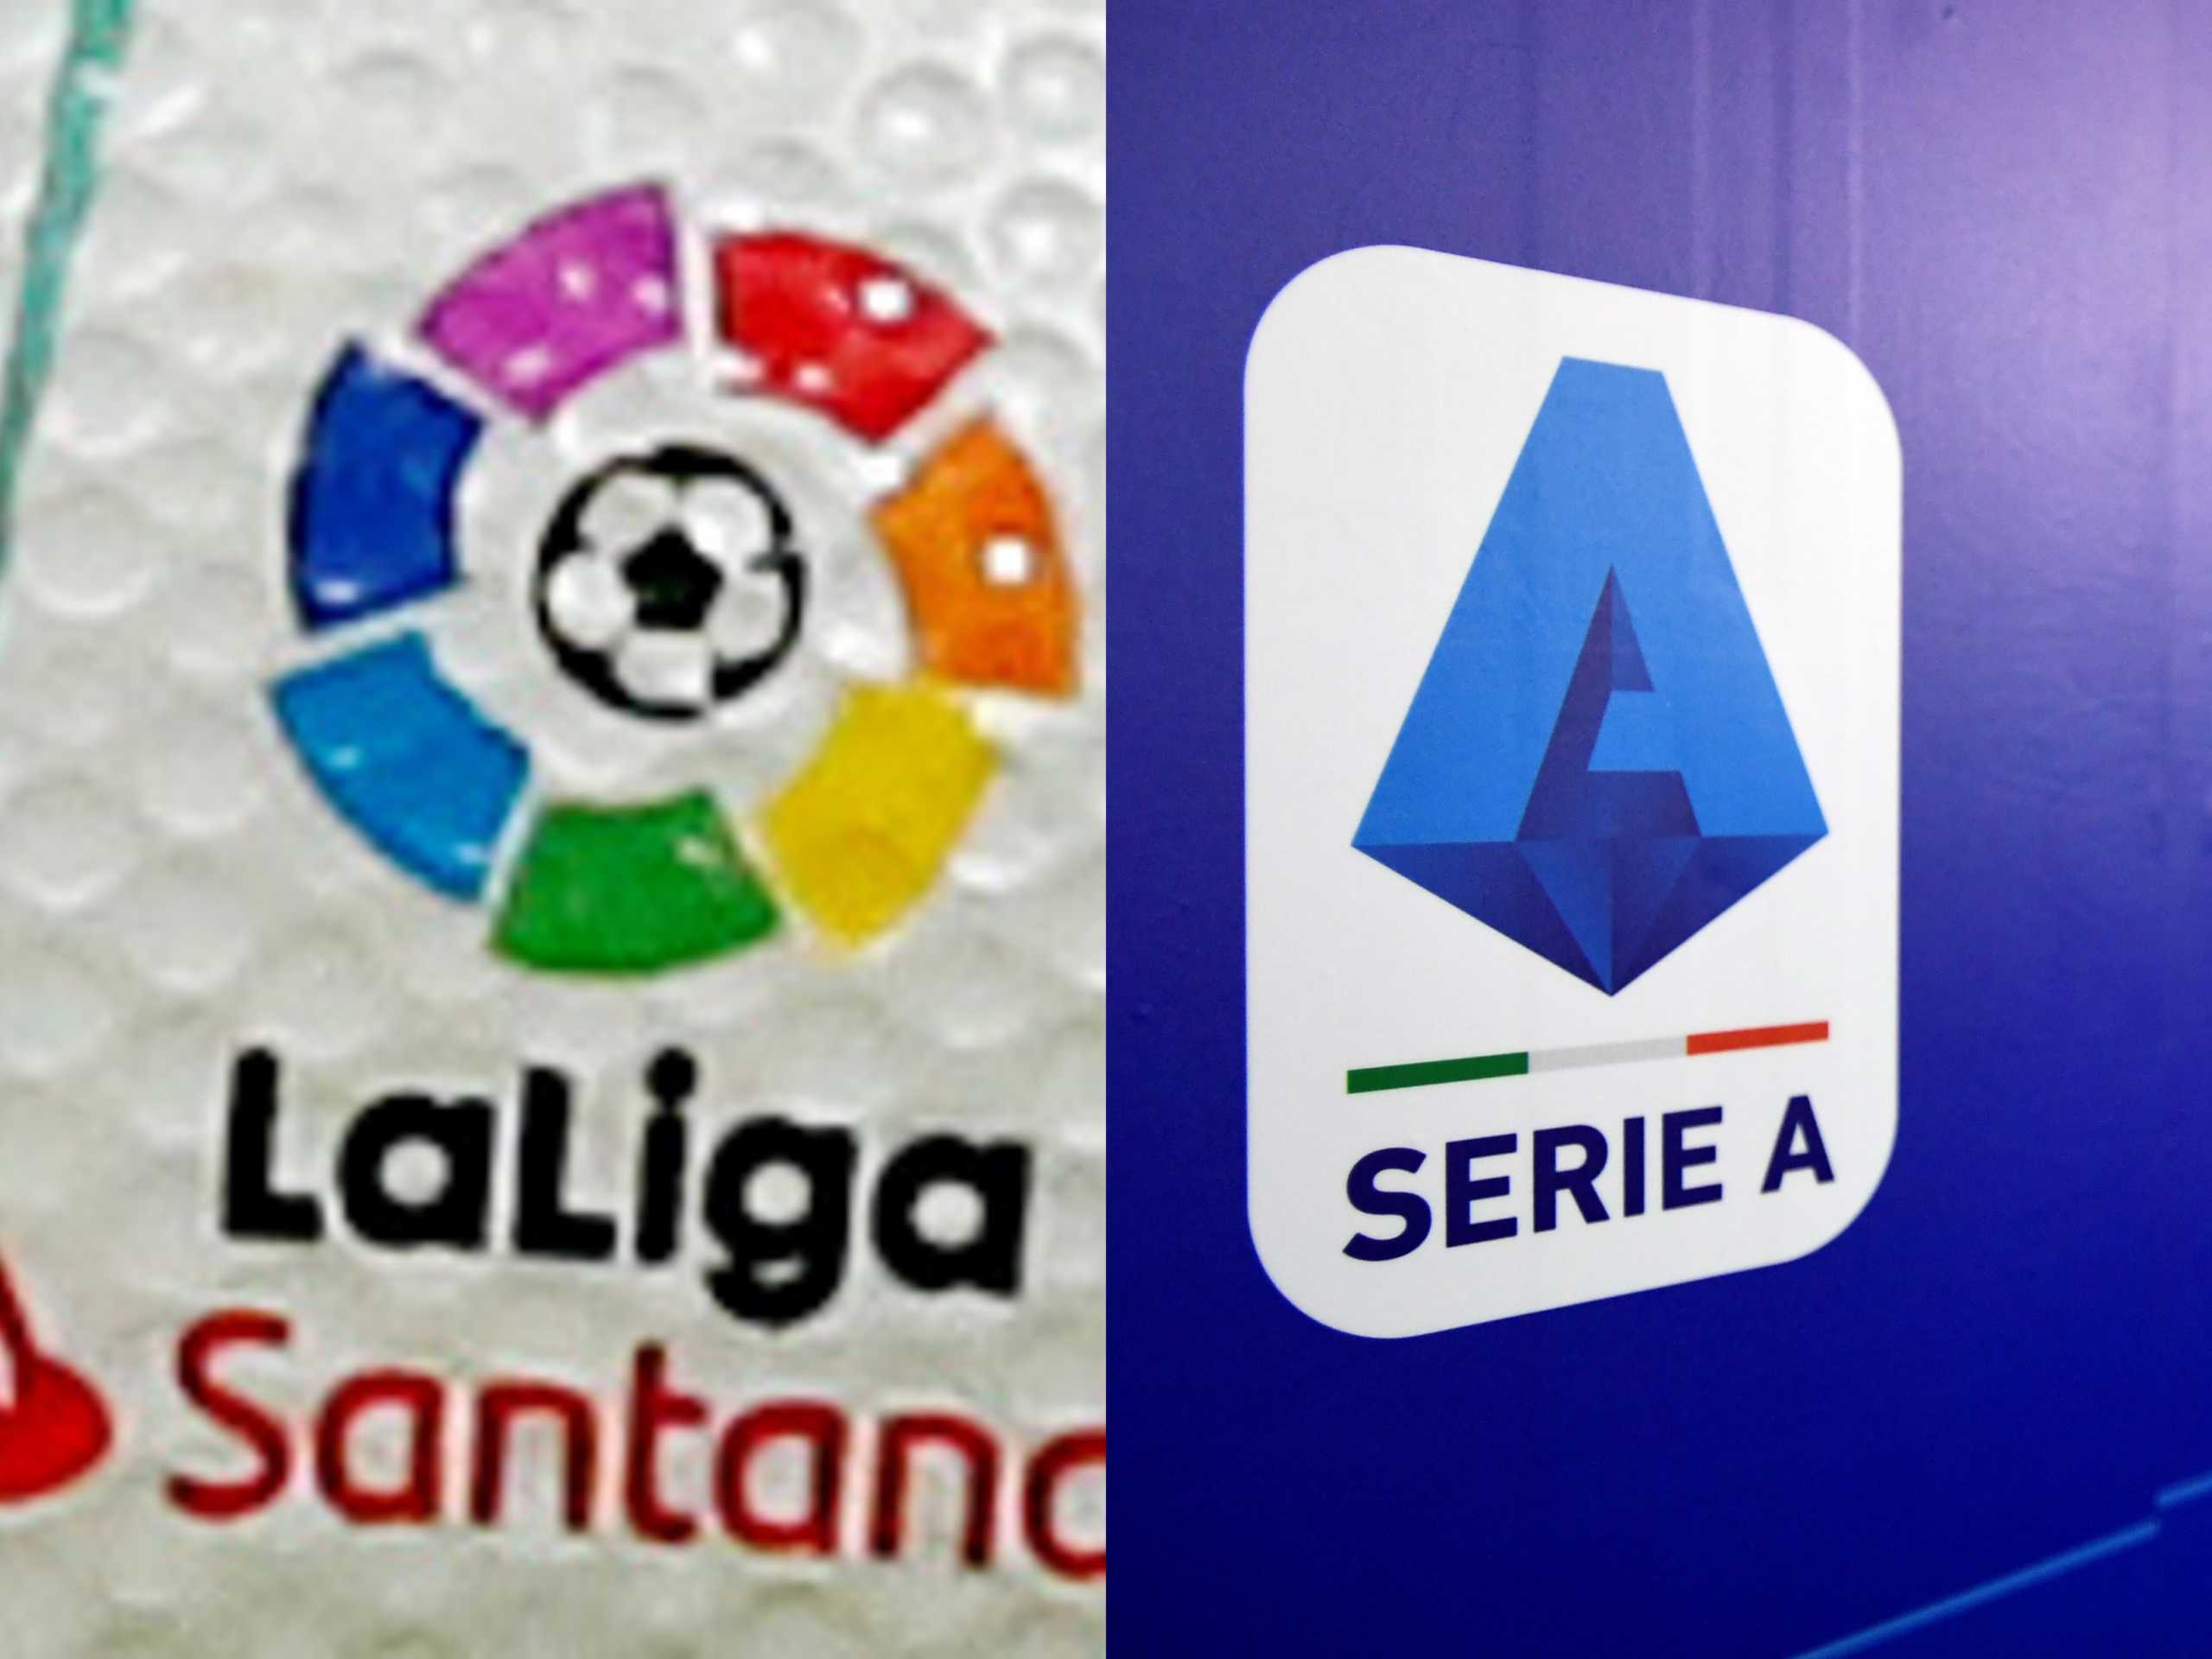 Ξεκινάνε οι ομαδικές προπονήσεις σε La Liga και Serie A